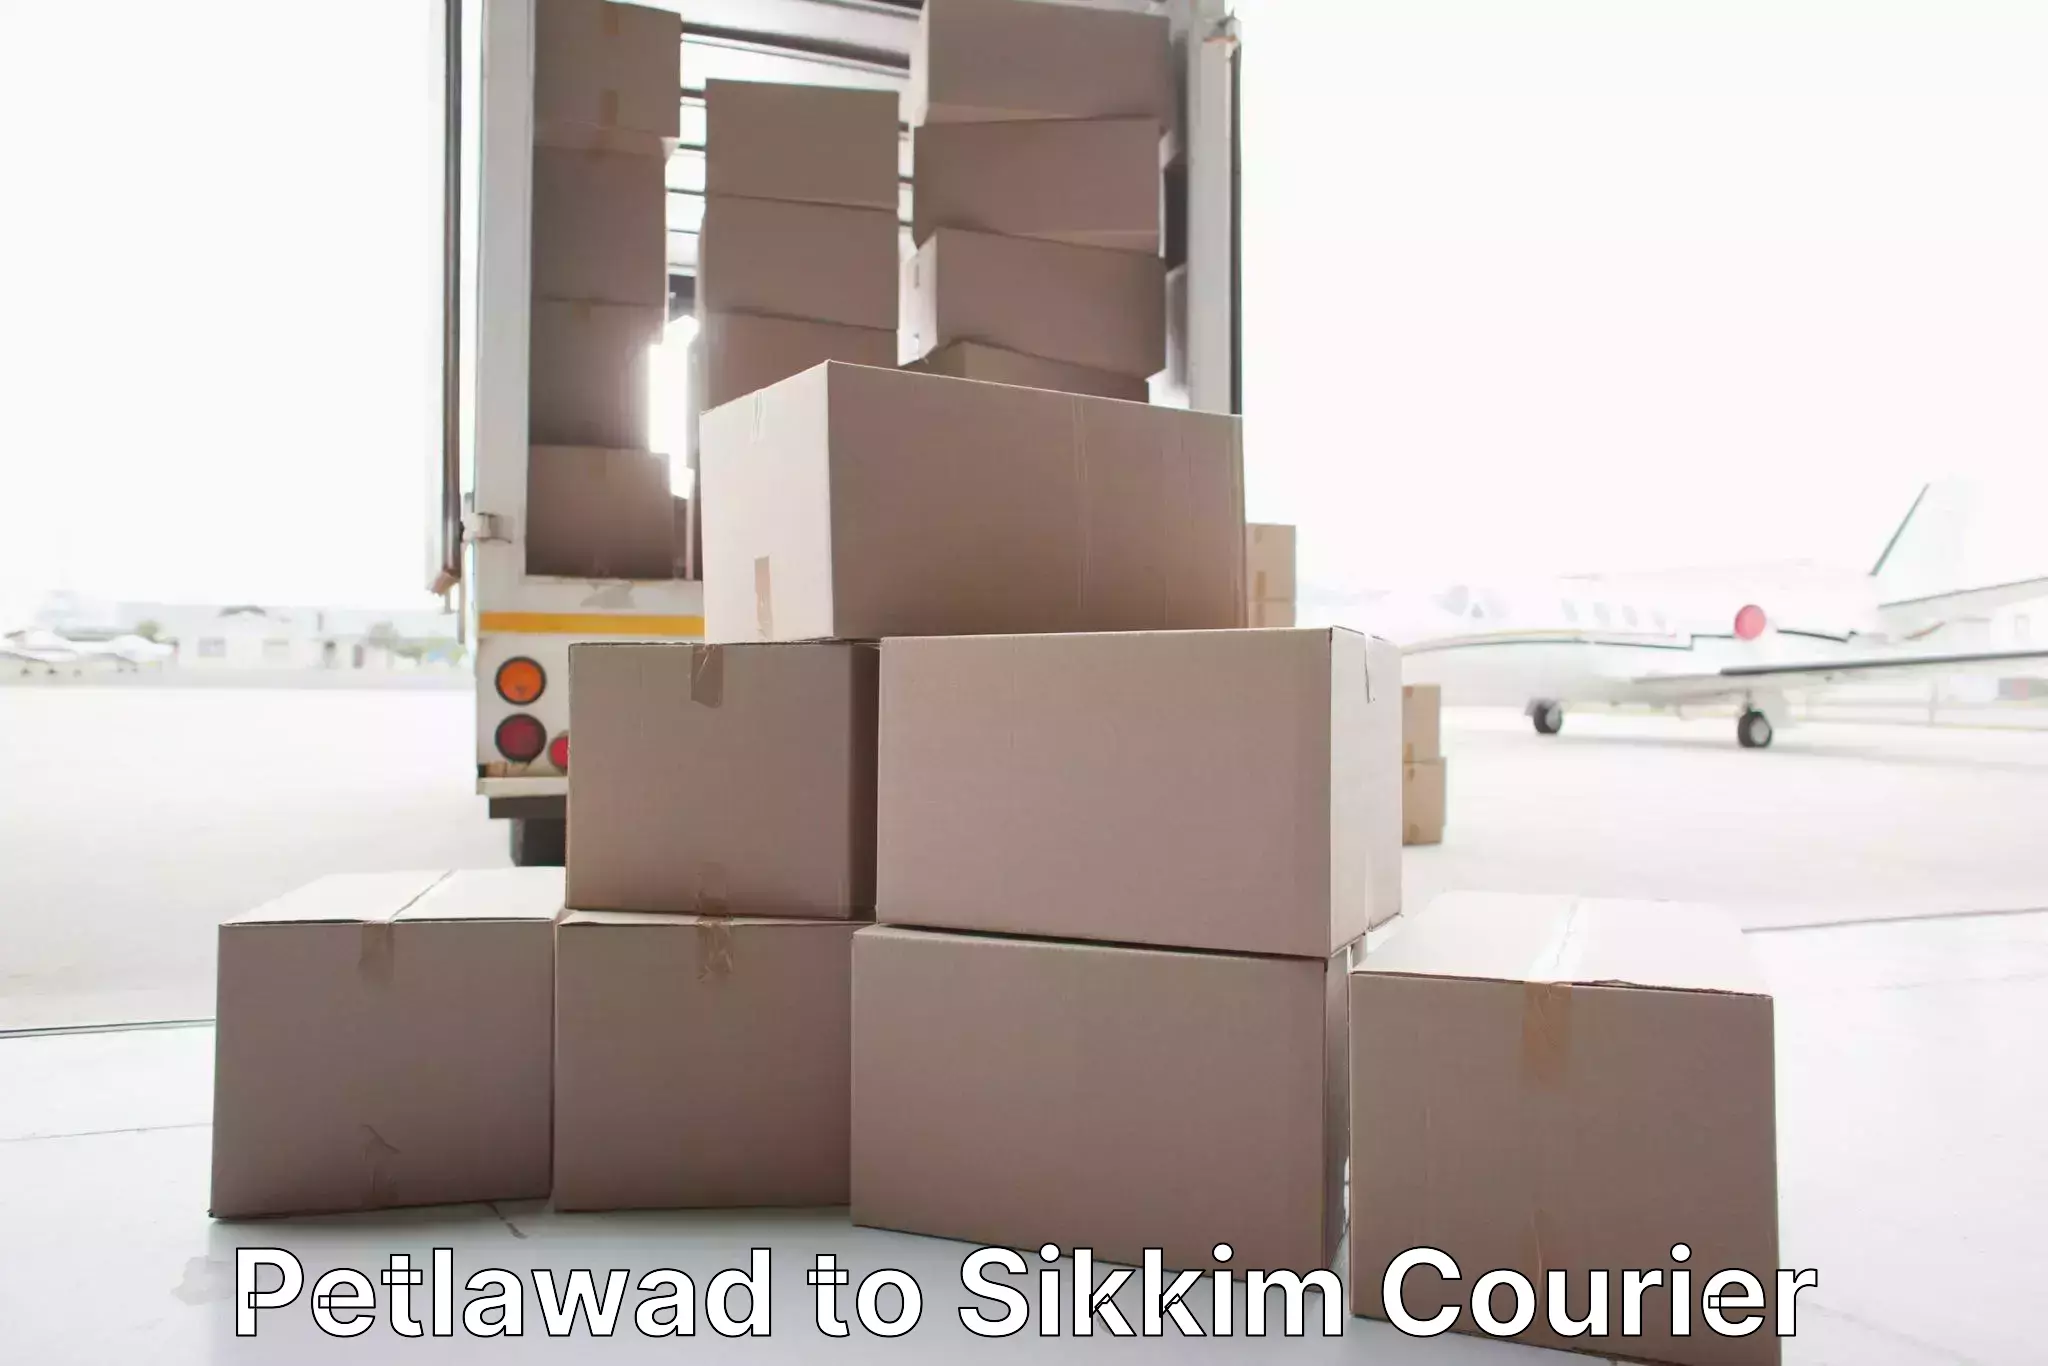 Furniture transport professionals Petlawad to North Sikkim